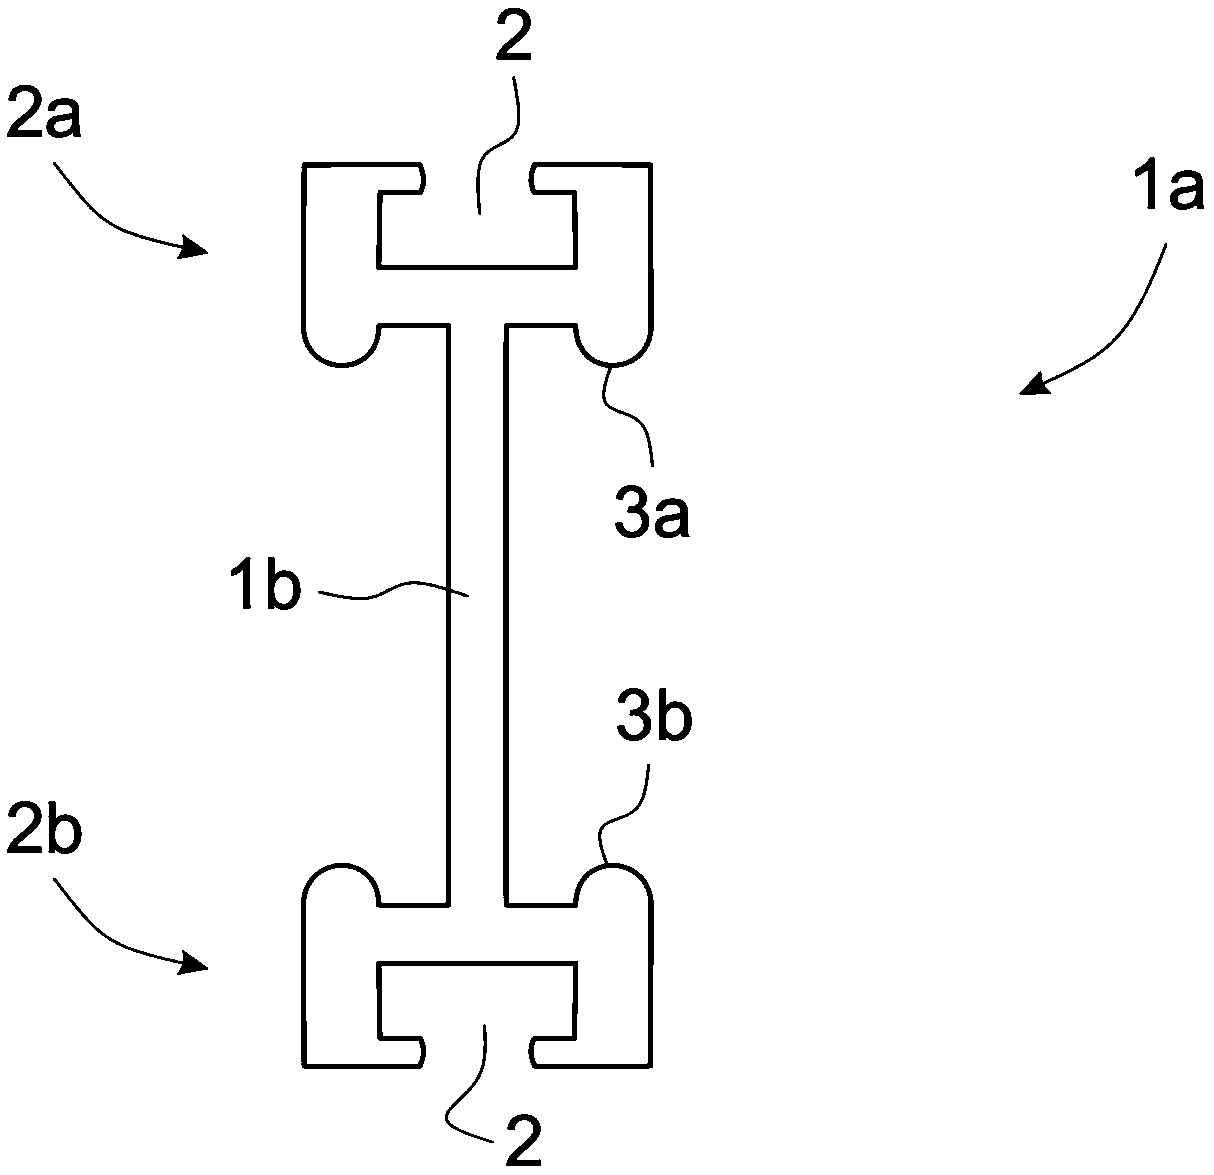 Arrangement in the door structure of an elevator